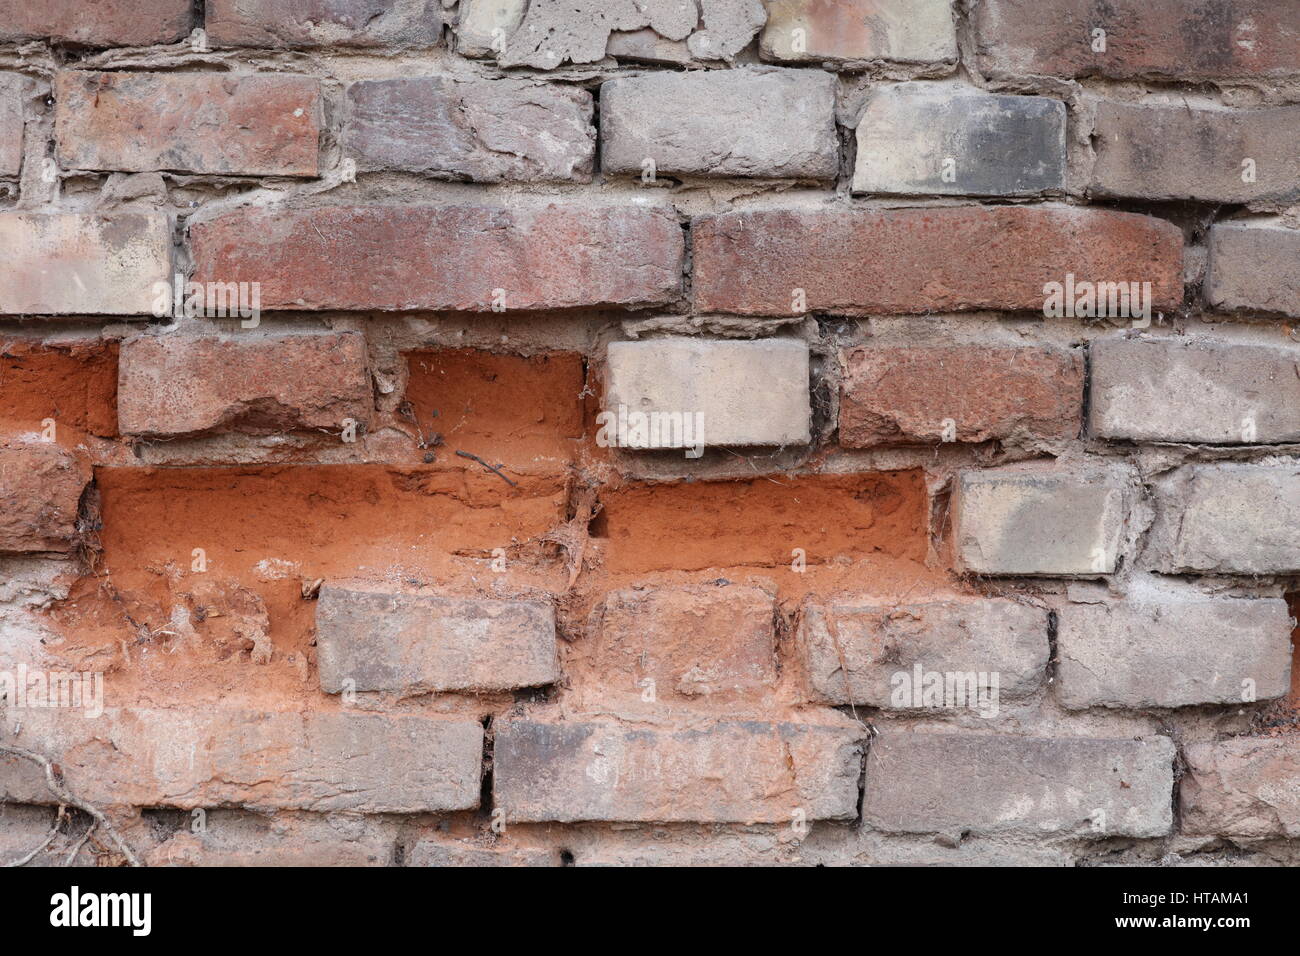 Natursteinmauer mit rotem Sandstein Stock Photo